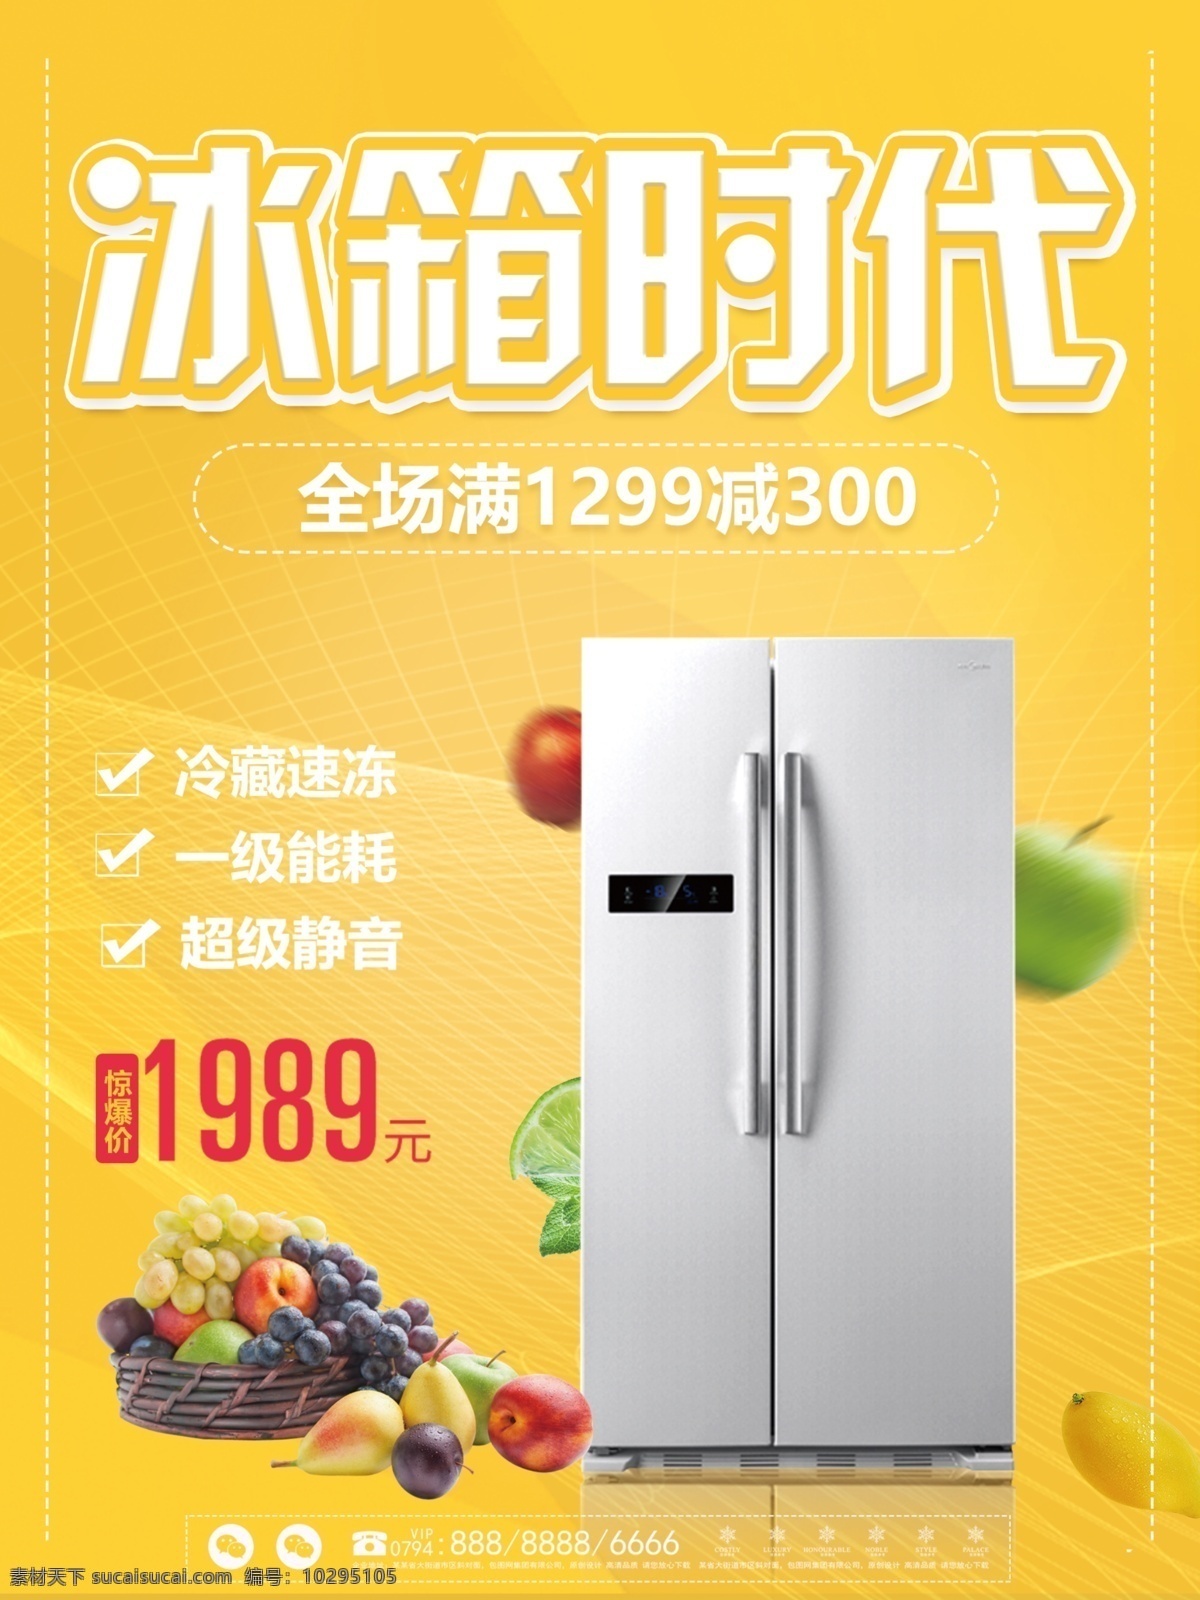 黄色 简约 冰箱 电器 促销 海报 水果 苹果 柠檬 双门冰箱